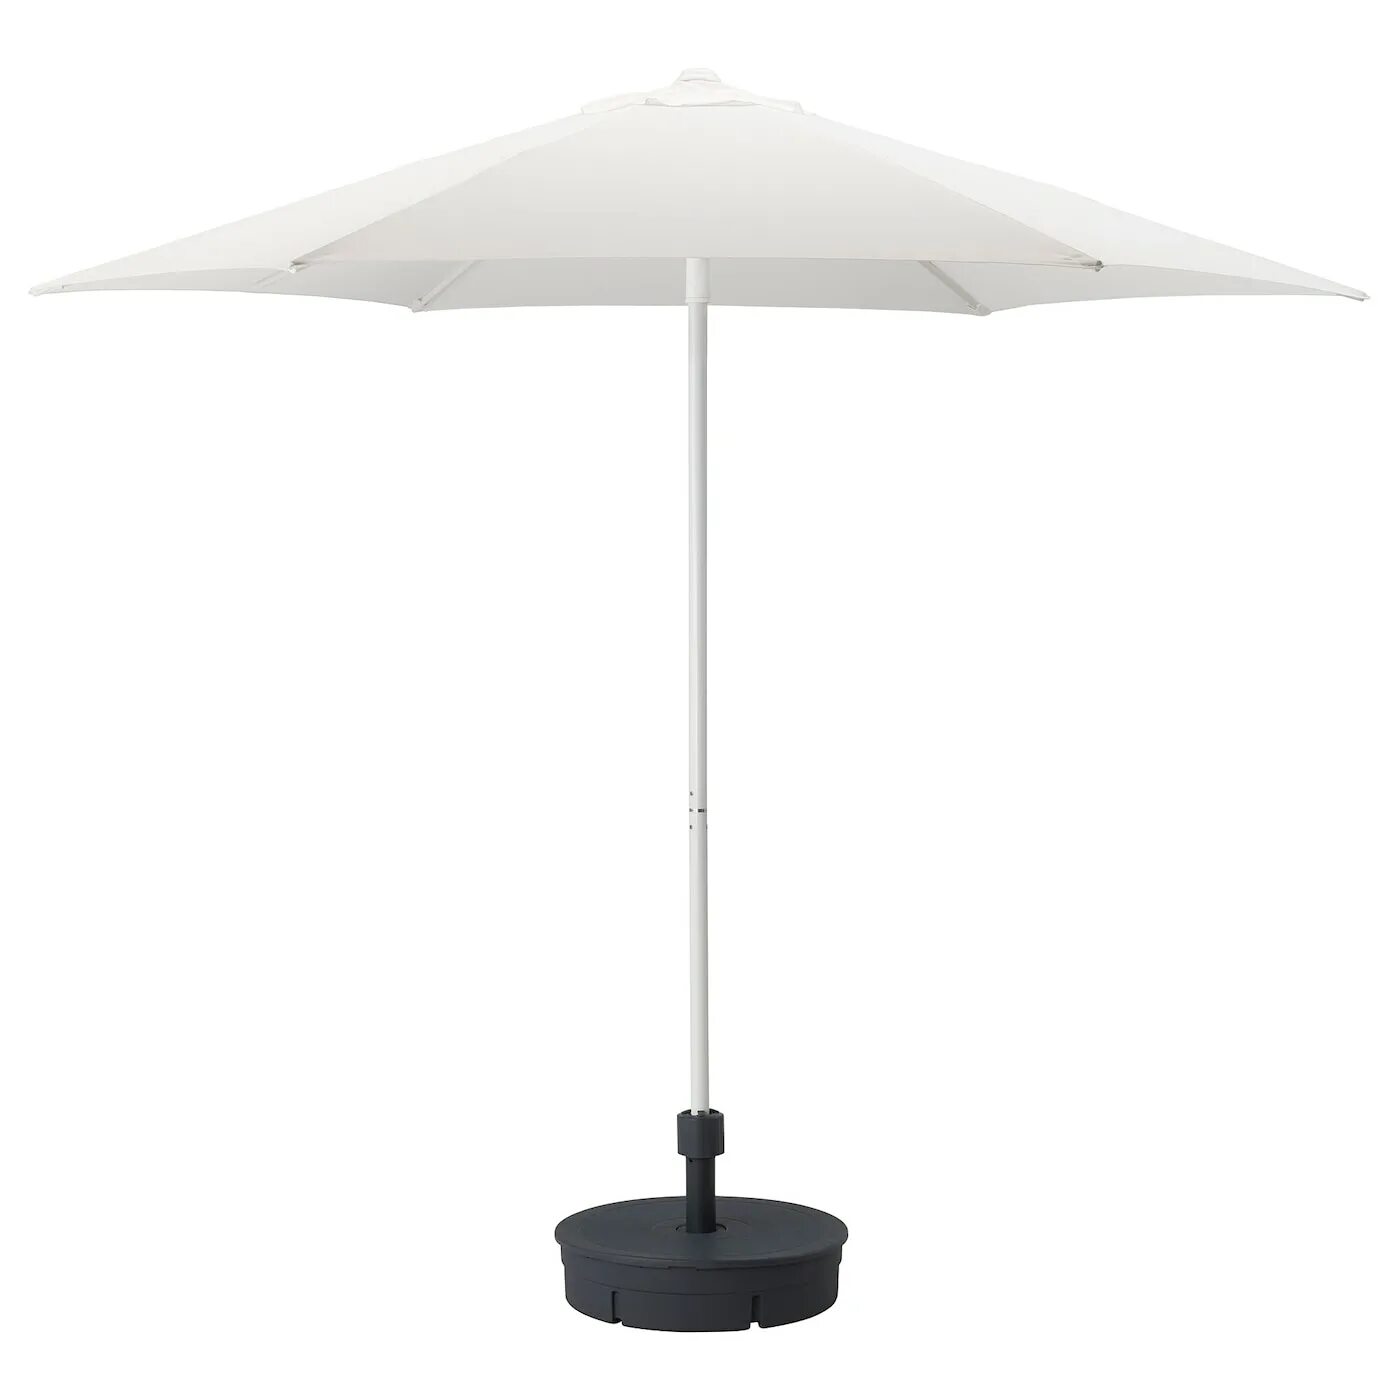 Купить пляжный зонт от солнца. Садовый зонт Green Glade а2092. Зонт Green Glade 2092 (белый). Зонт пляжный Green Glade.